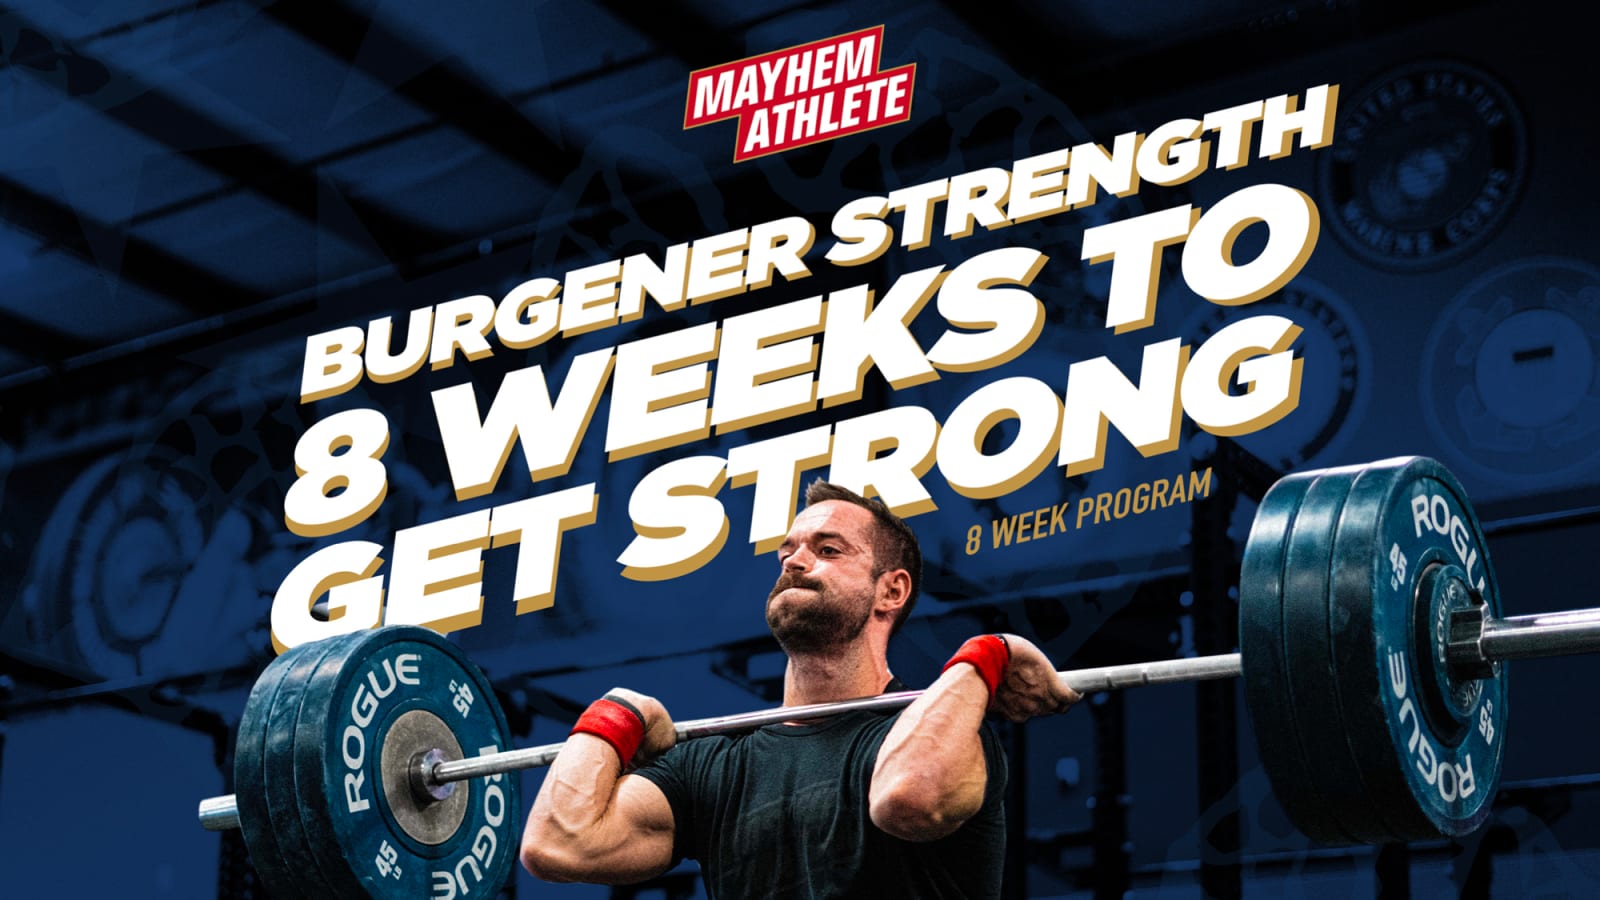 Burgener Strength 8 Weeks To Get